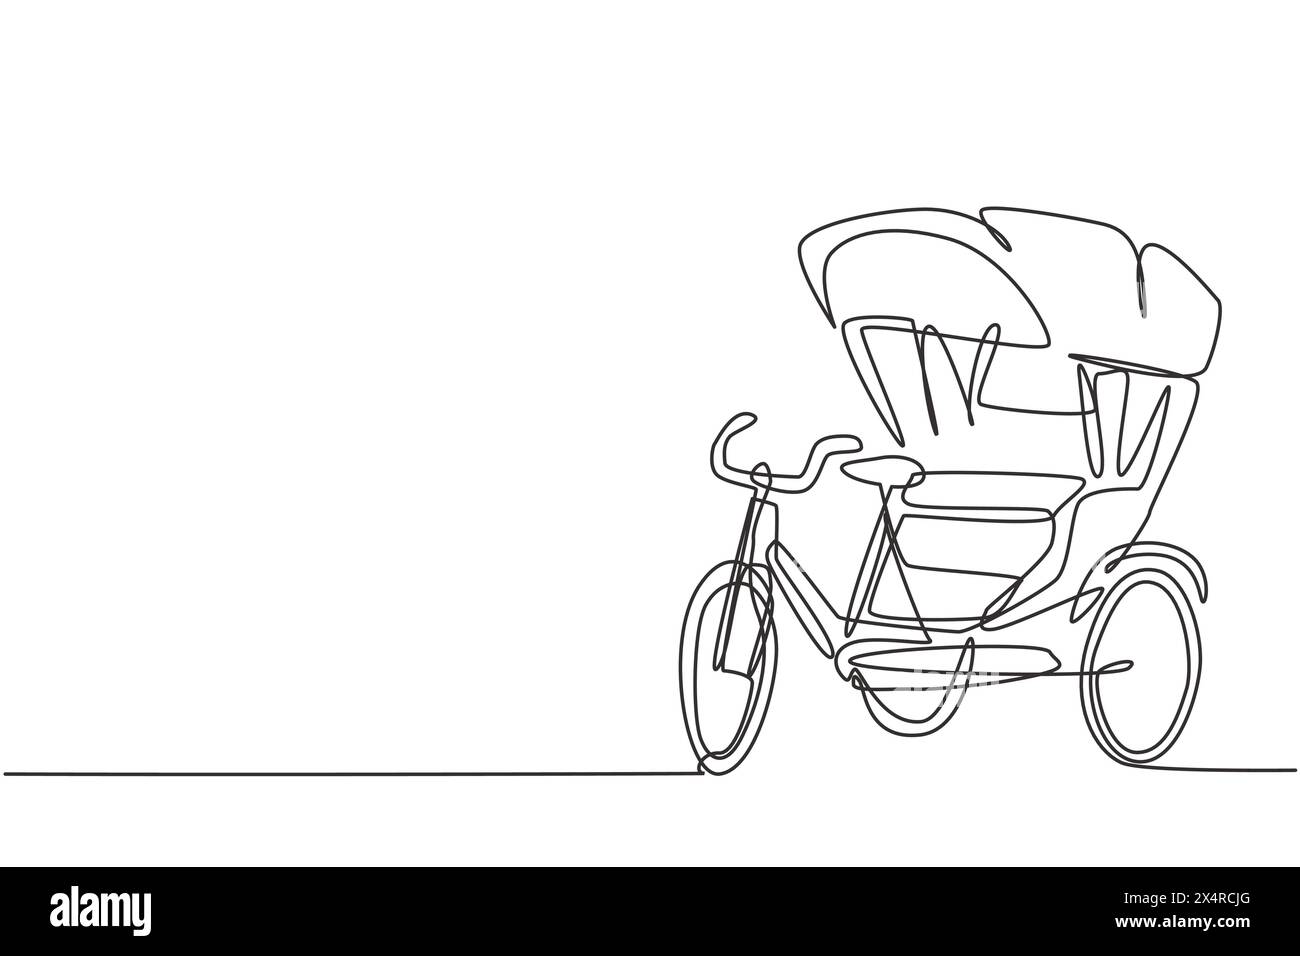 Eine einzeilige Zeichnung einer Fahrrad-Rikscha mit drei Rädern und einem Fond-Beifahrersitz ist ein altes Fahrzeug in mehreren asiatischen Ländern. Modernes Kontinuum Stock Vektor